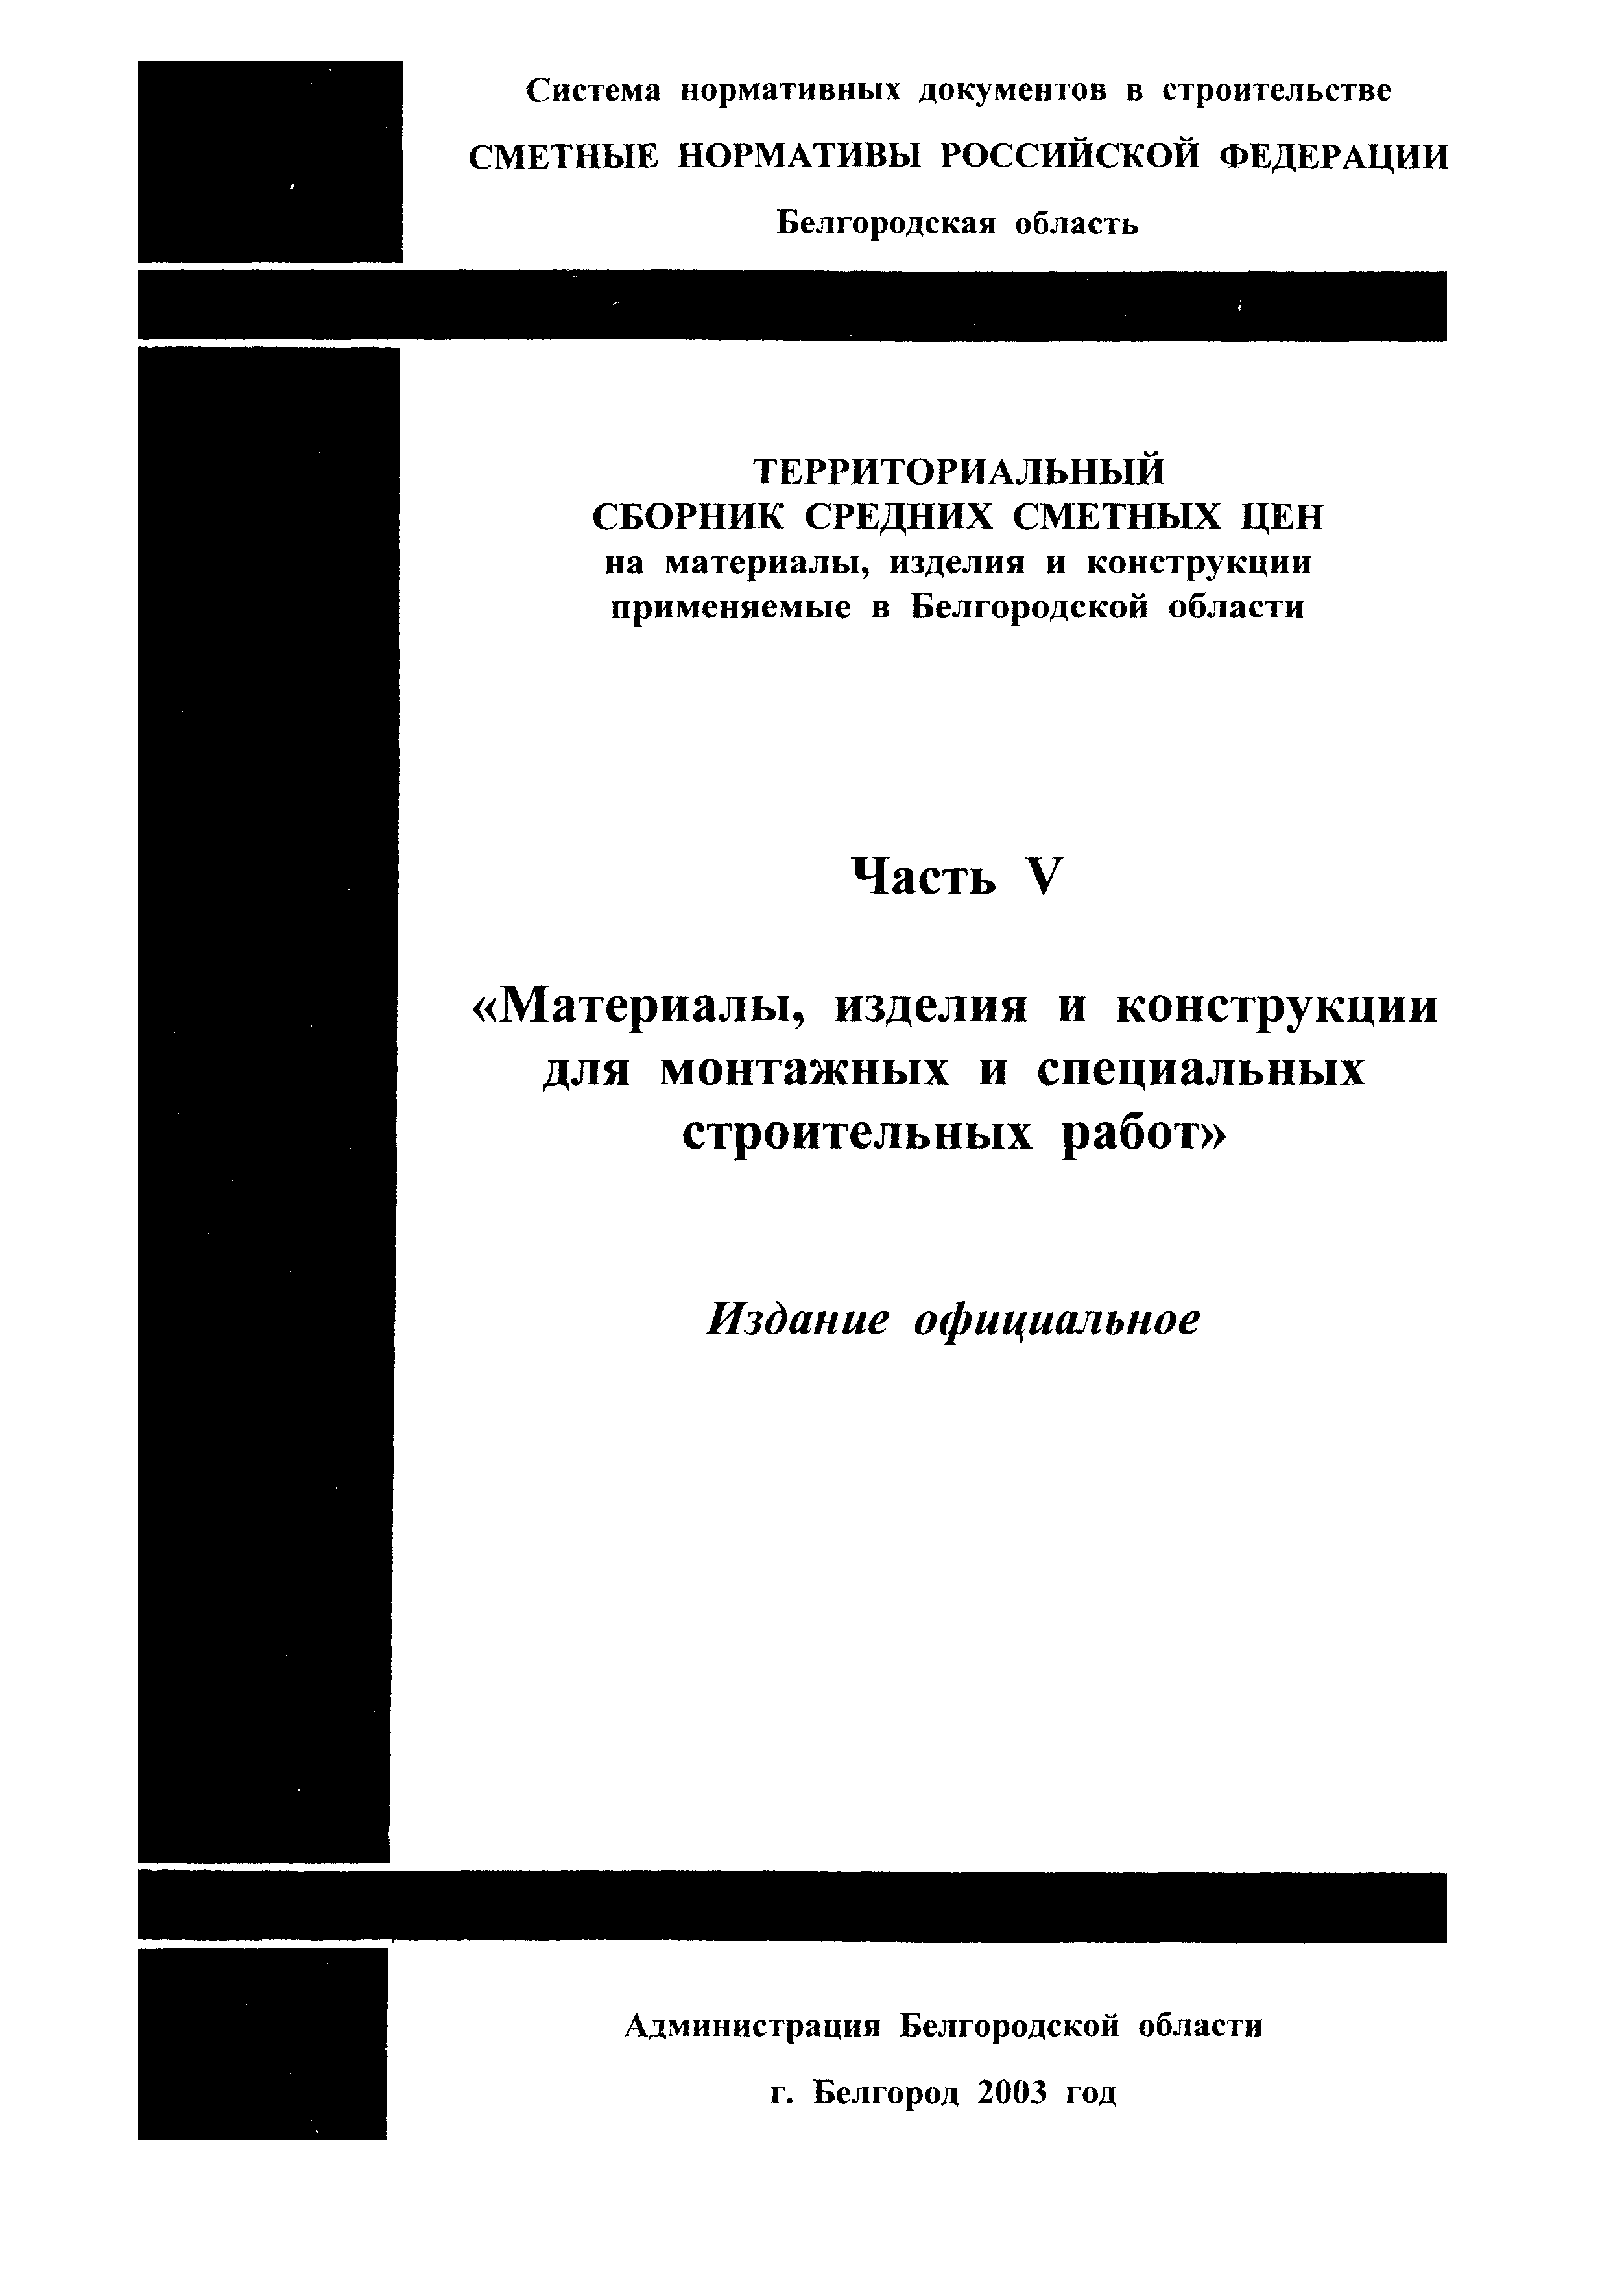 ТСЦ Белгородская область 81-01-2001